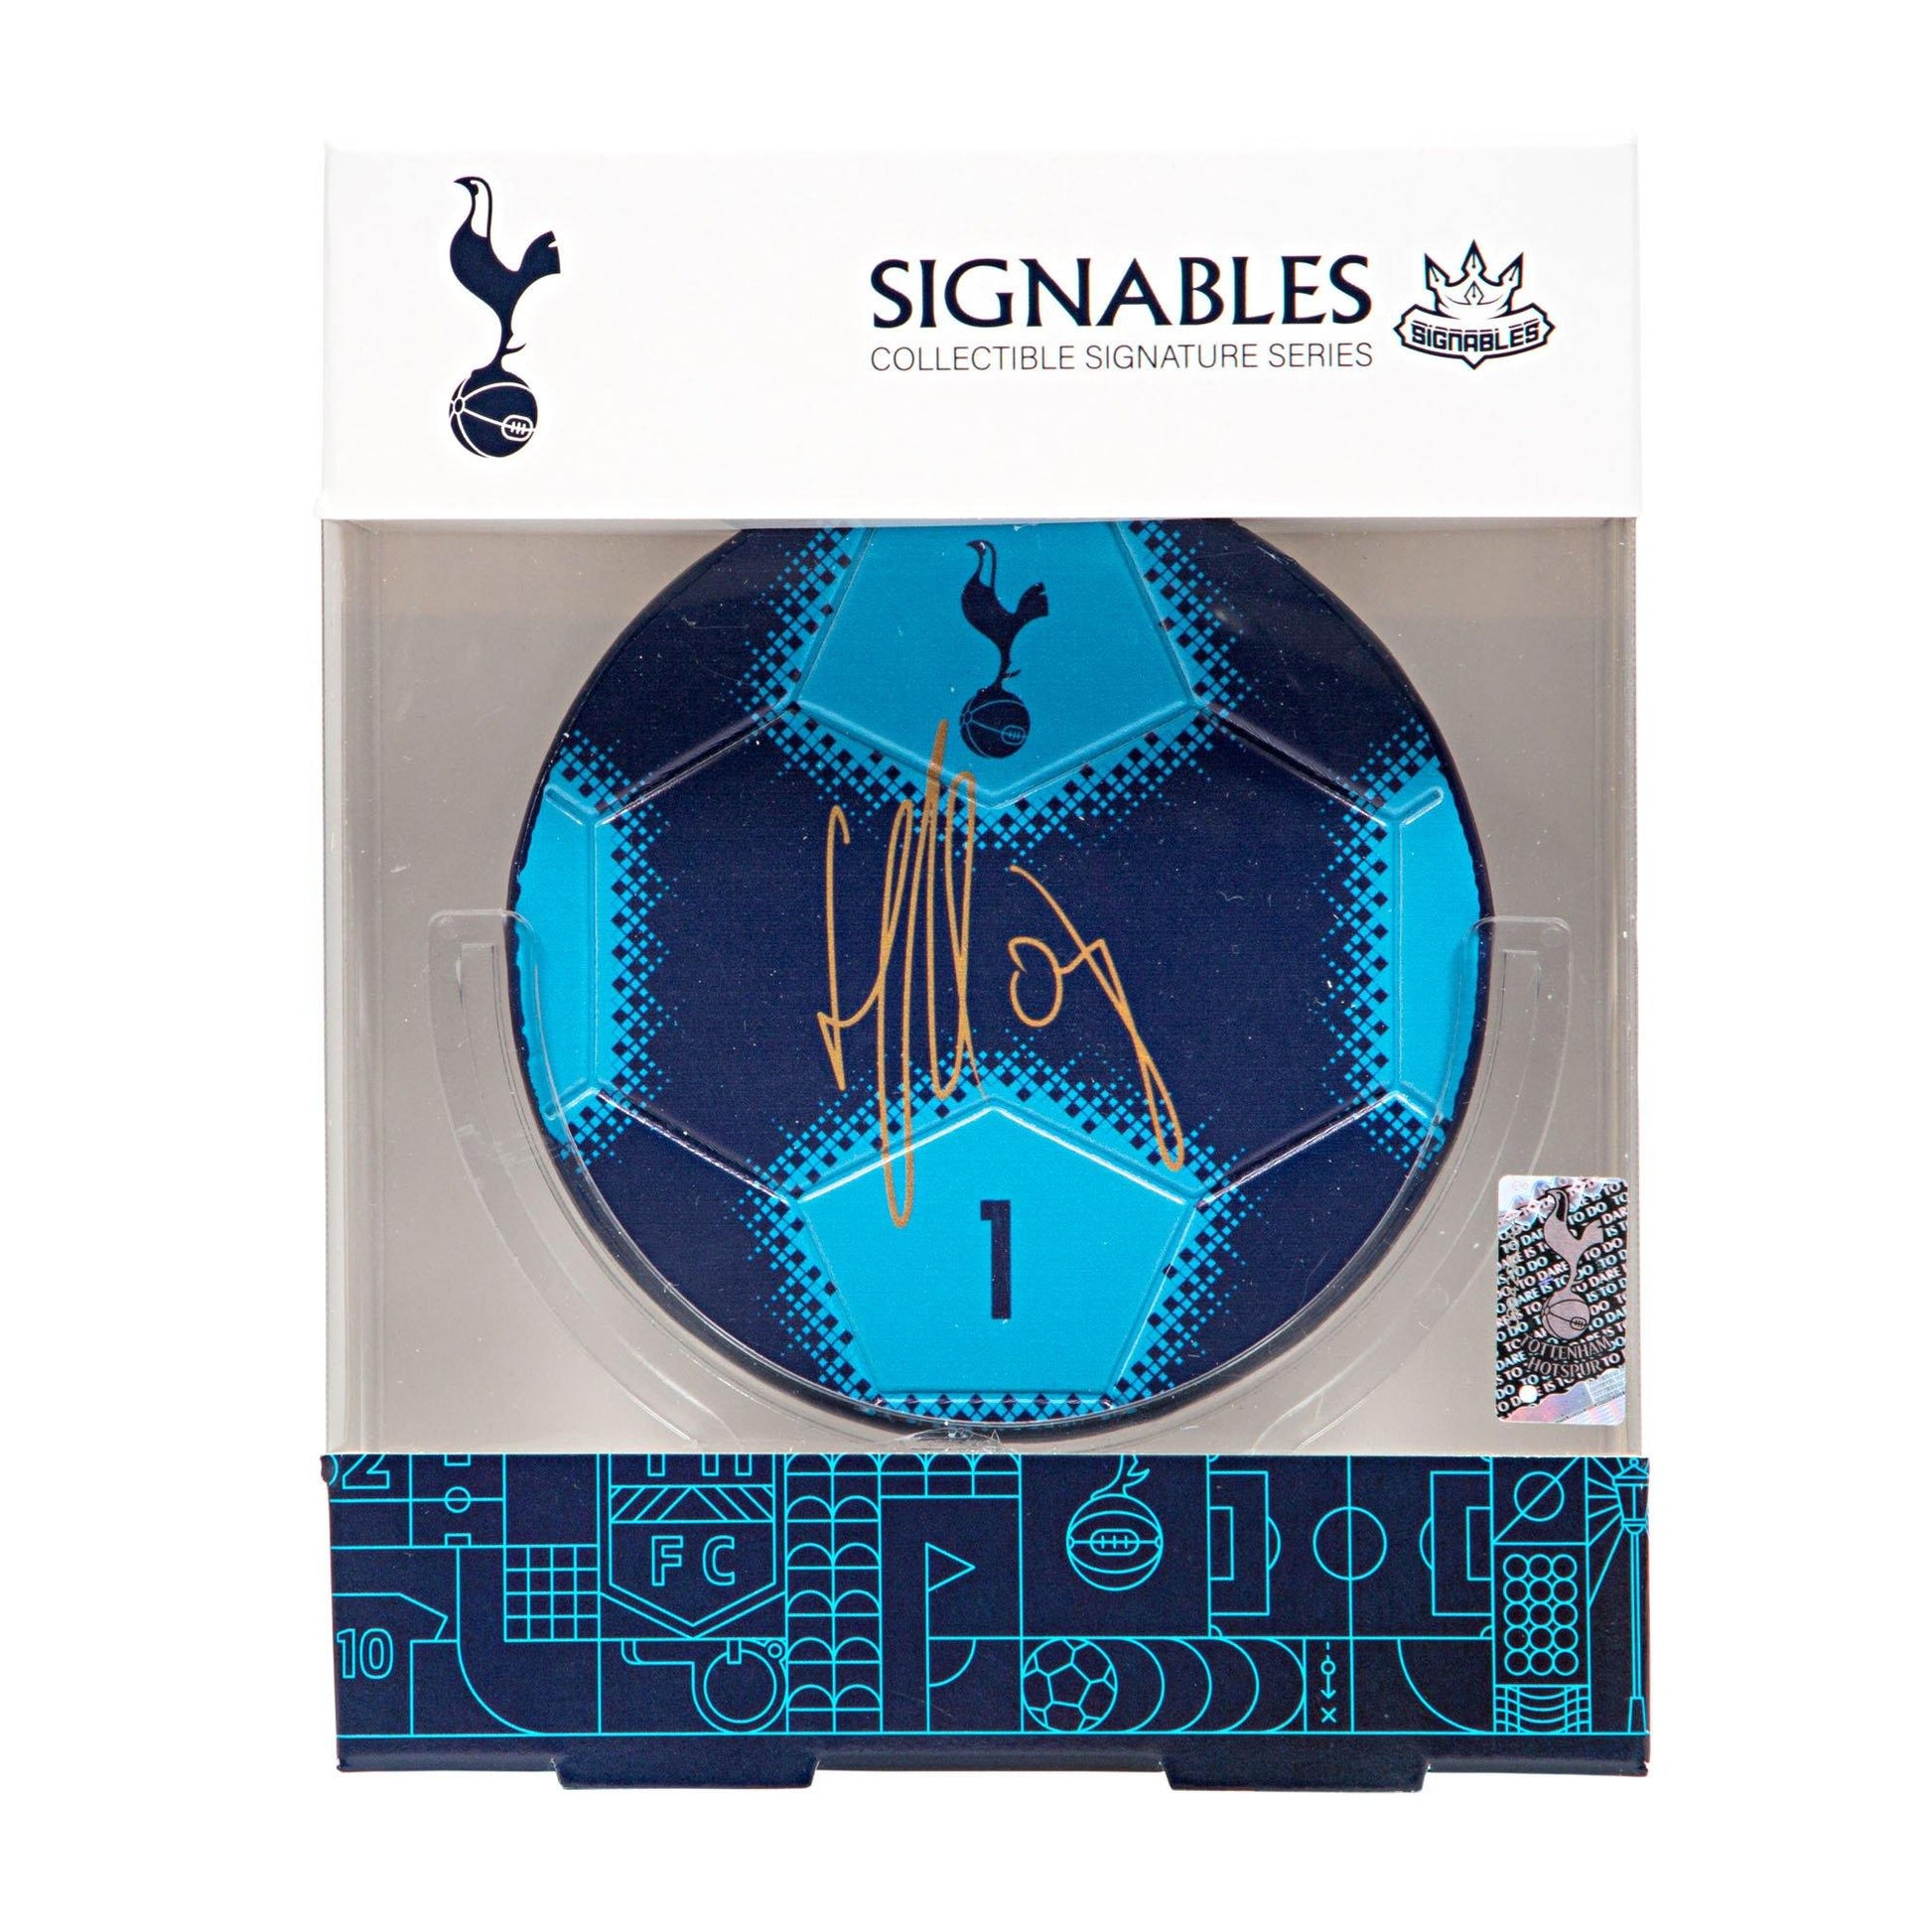 Hugo Lloris - Tottenham Hotspur F.C. Signables Collectible Box Front